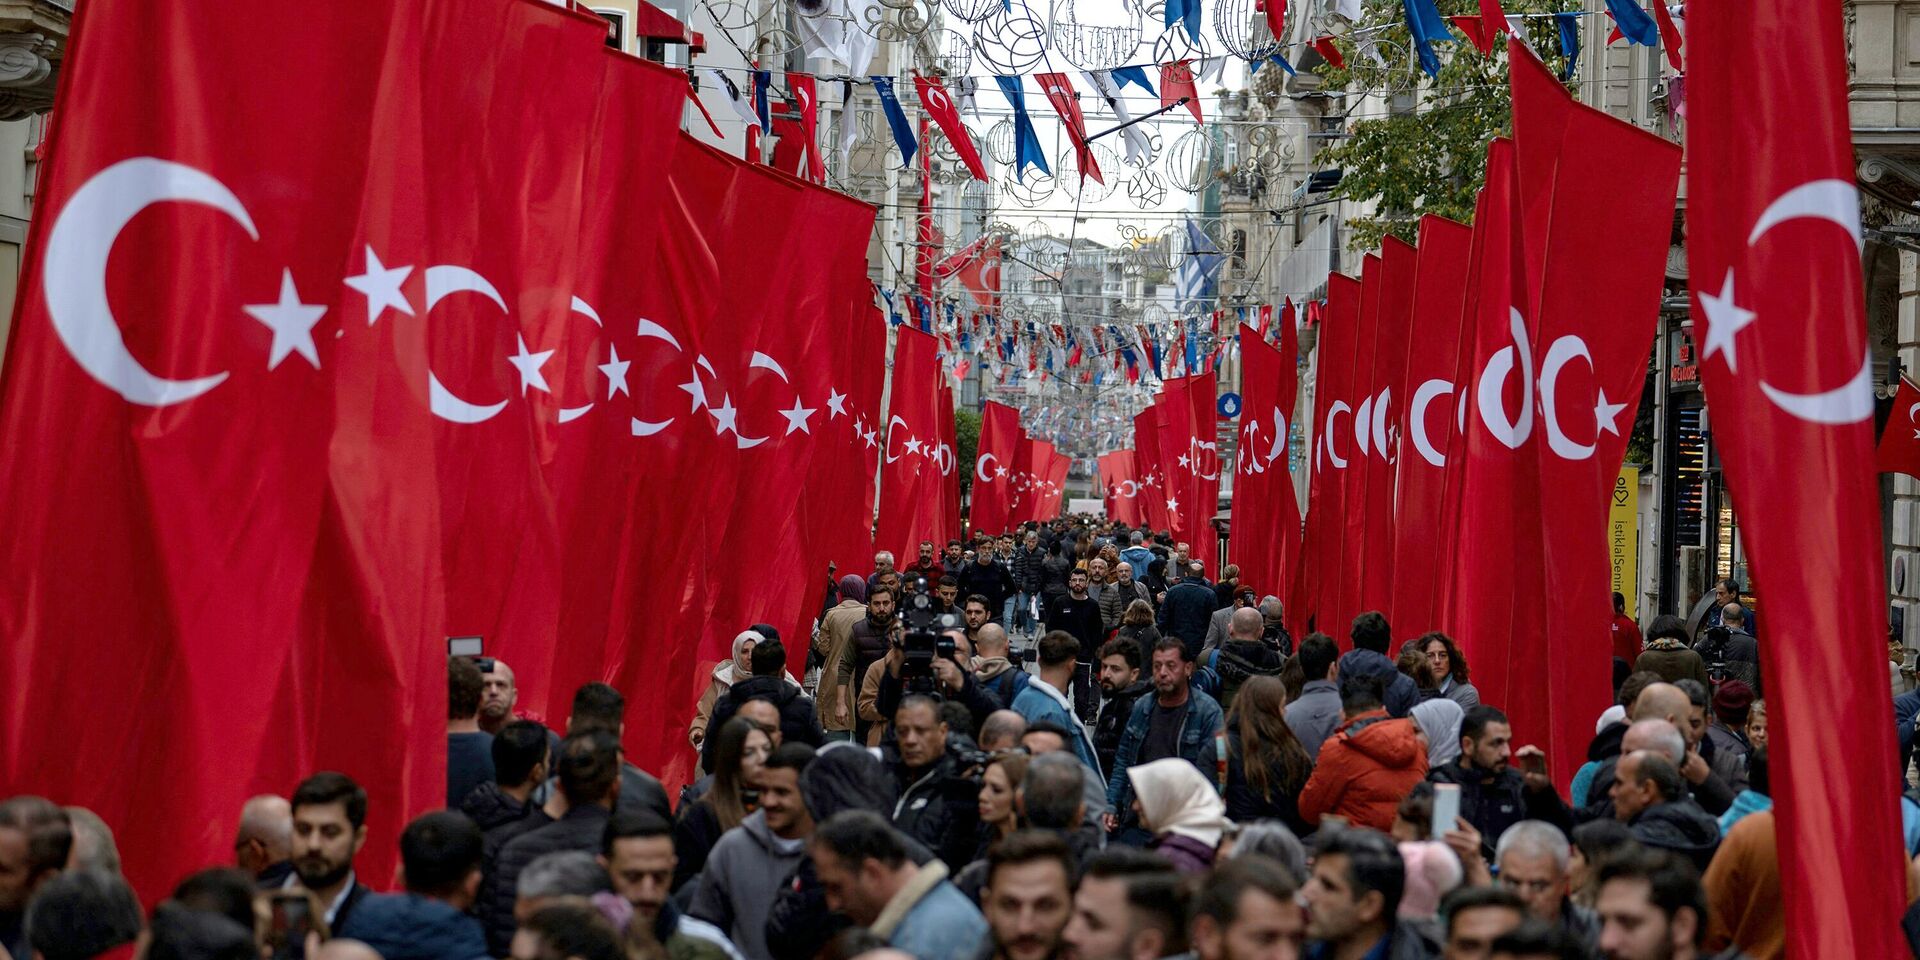 Пешеходы на улице Истикляль в Стамбуле, 14 ноября 2022 года - ИноСМИ, 1920, 14.11.2022